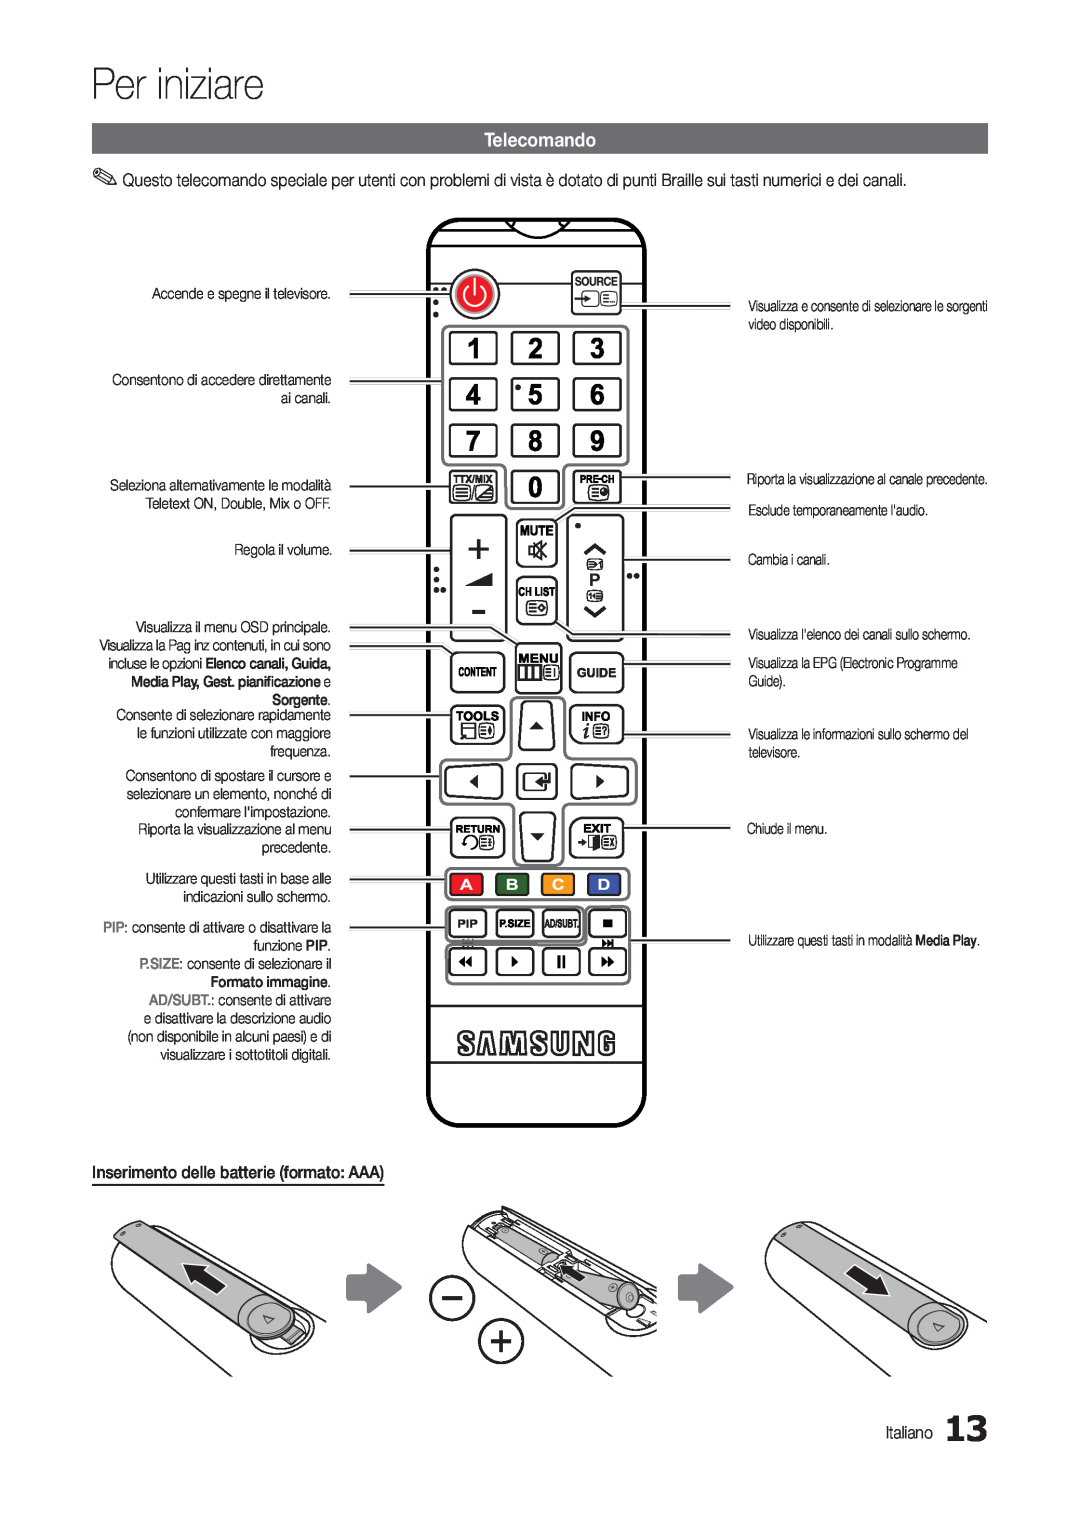 Samsung LT24B300EEZ/EN manual Telecomando, Per iniziare, Regola il volume, Riporta la visualizzazione al canale precedente 